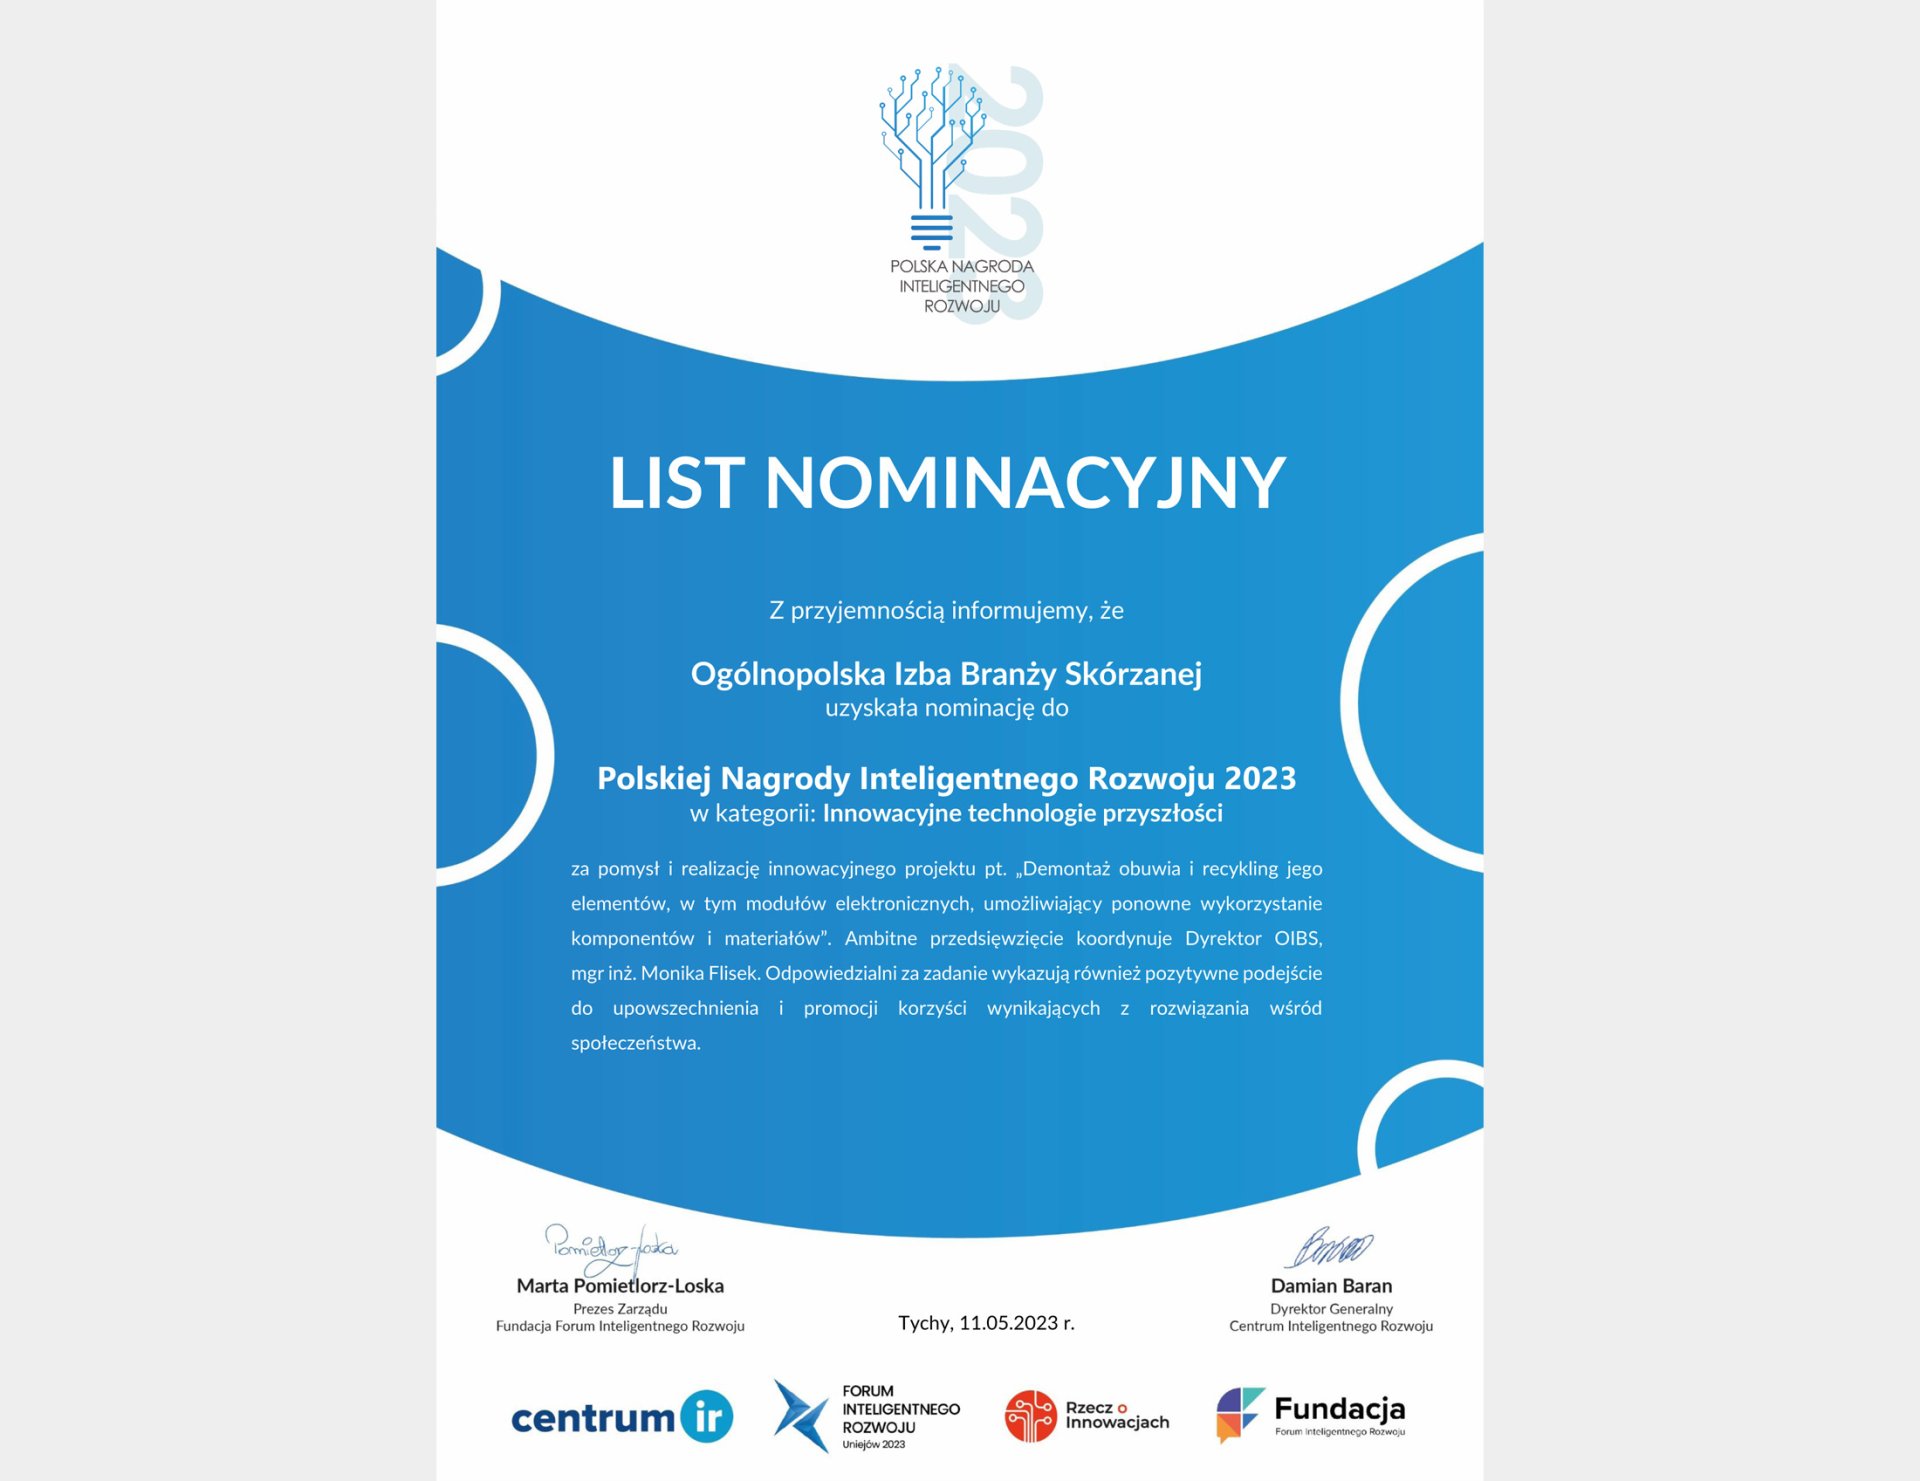 Nominacja OIBS do Polskiej nagrody Inteligentnego Rozwoju 2023